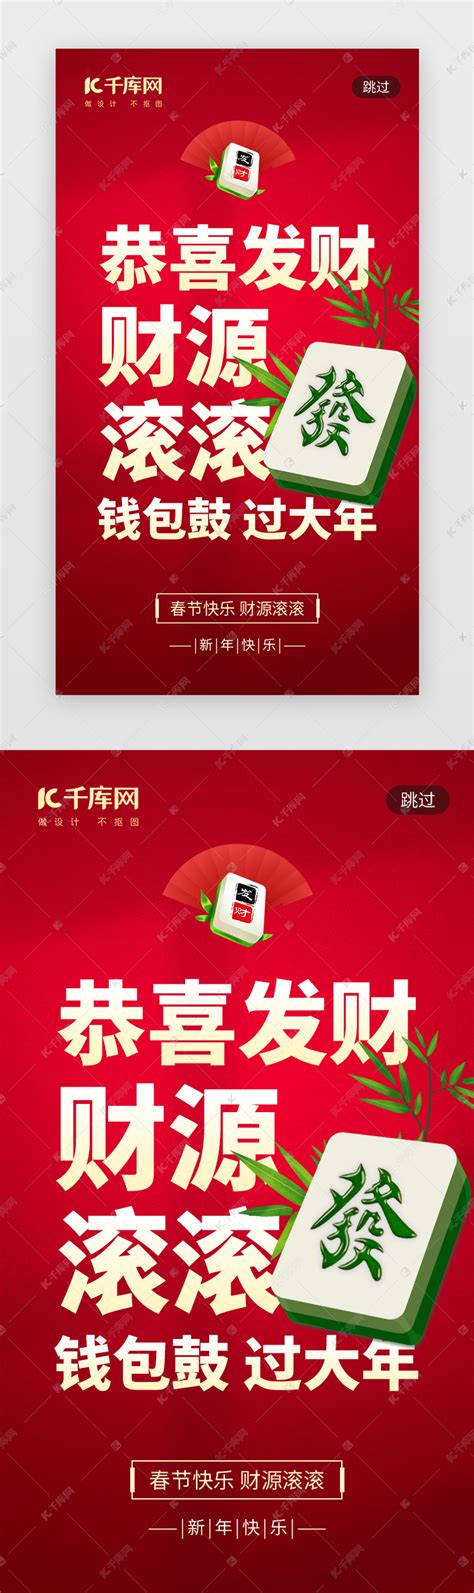 恭喜发财新年祝福app闪屏创意红色麻将ui界面设计素材-千库网